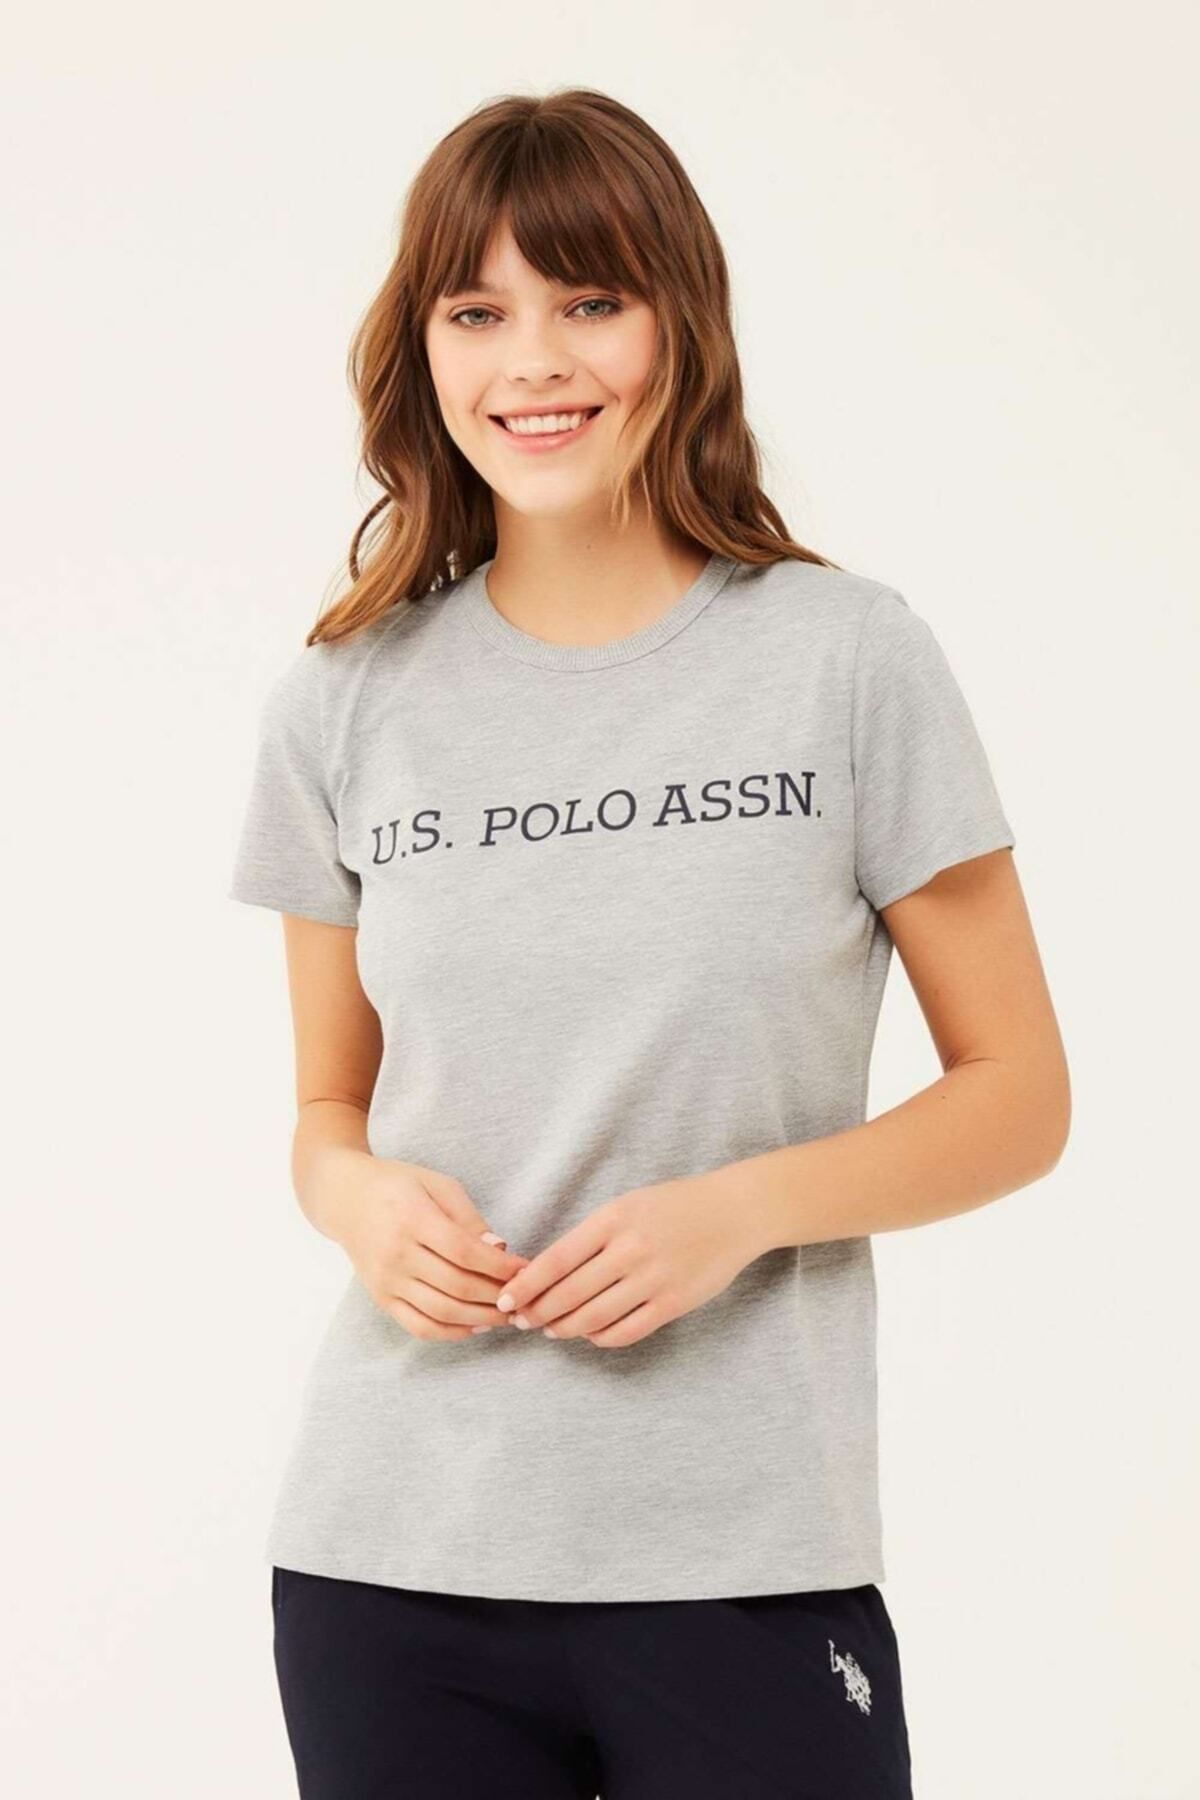 U.S. Polo Assn. Kadın Gri Melanj Yuvarlak Yaka T-shirt